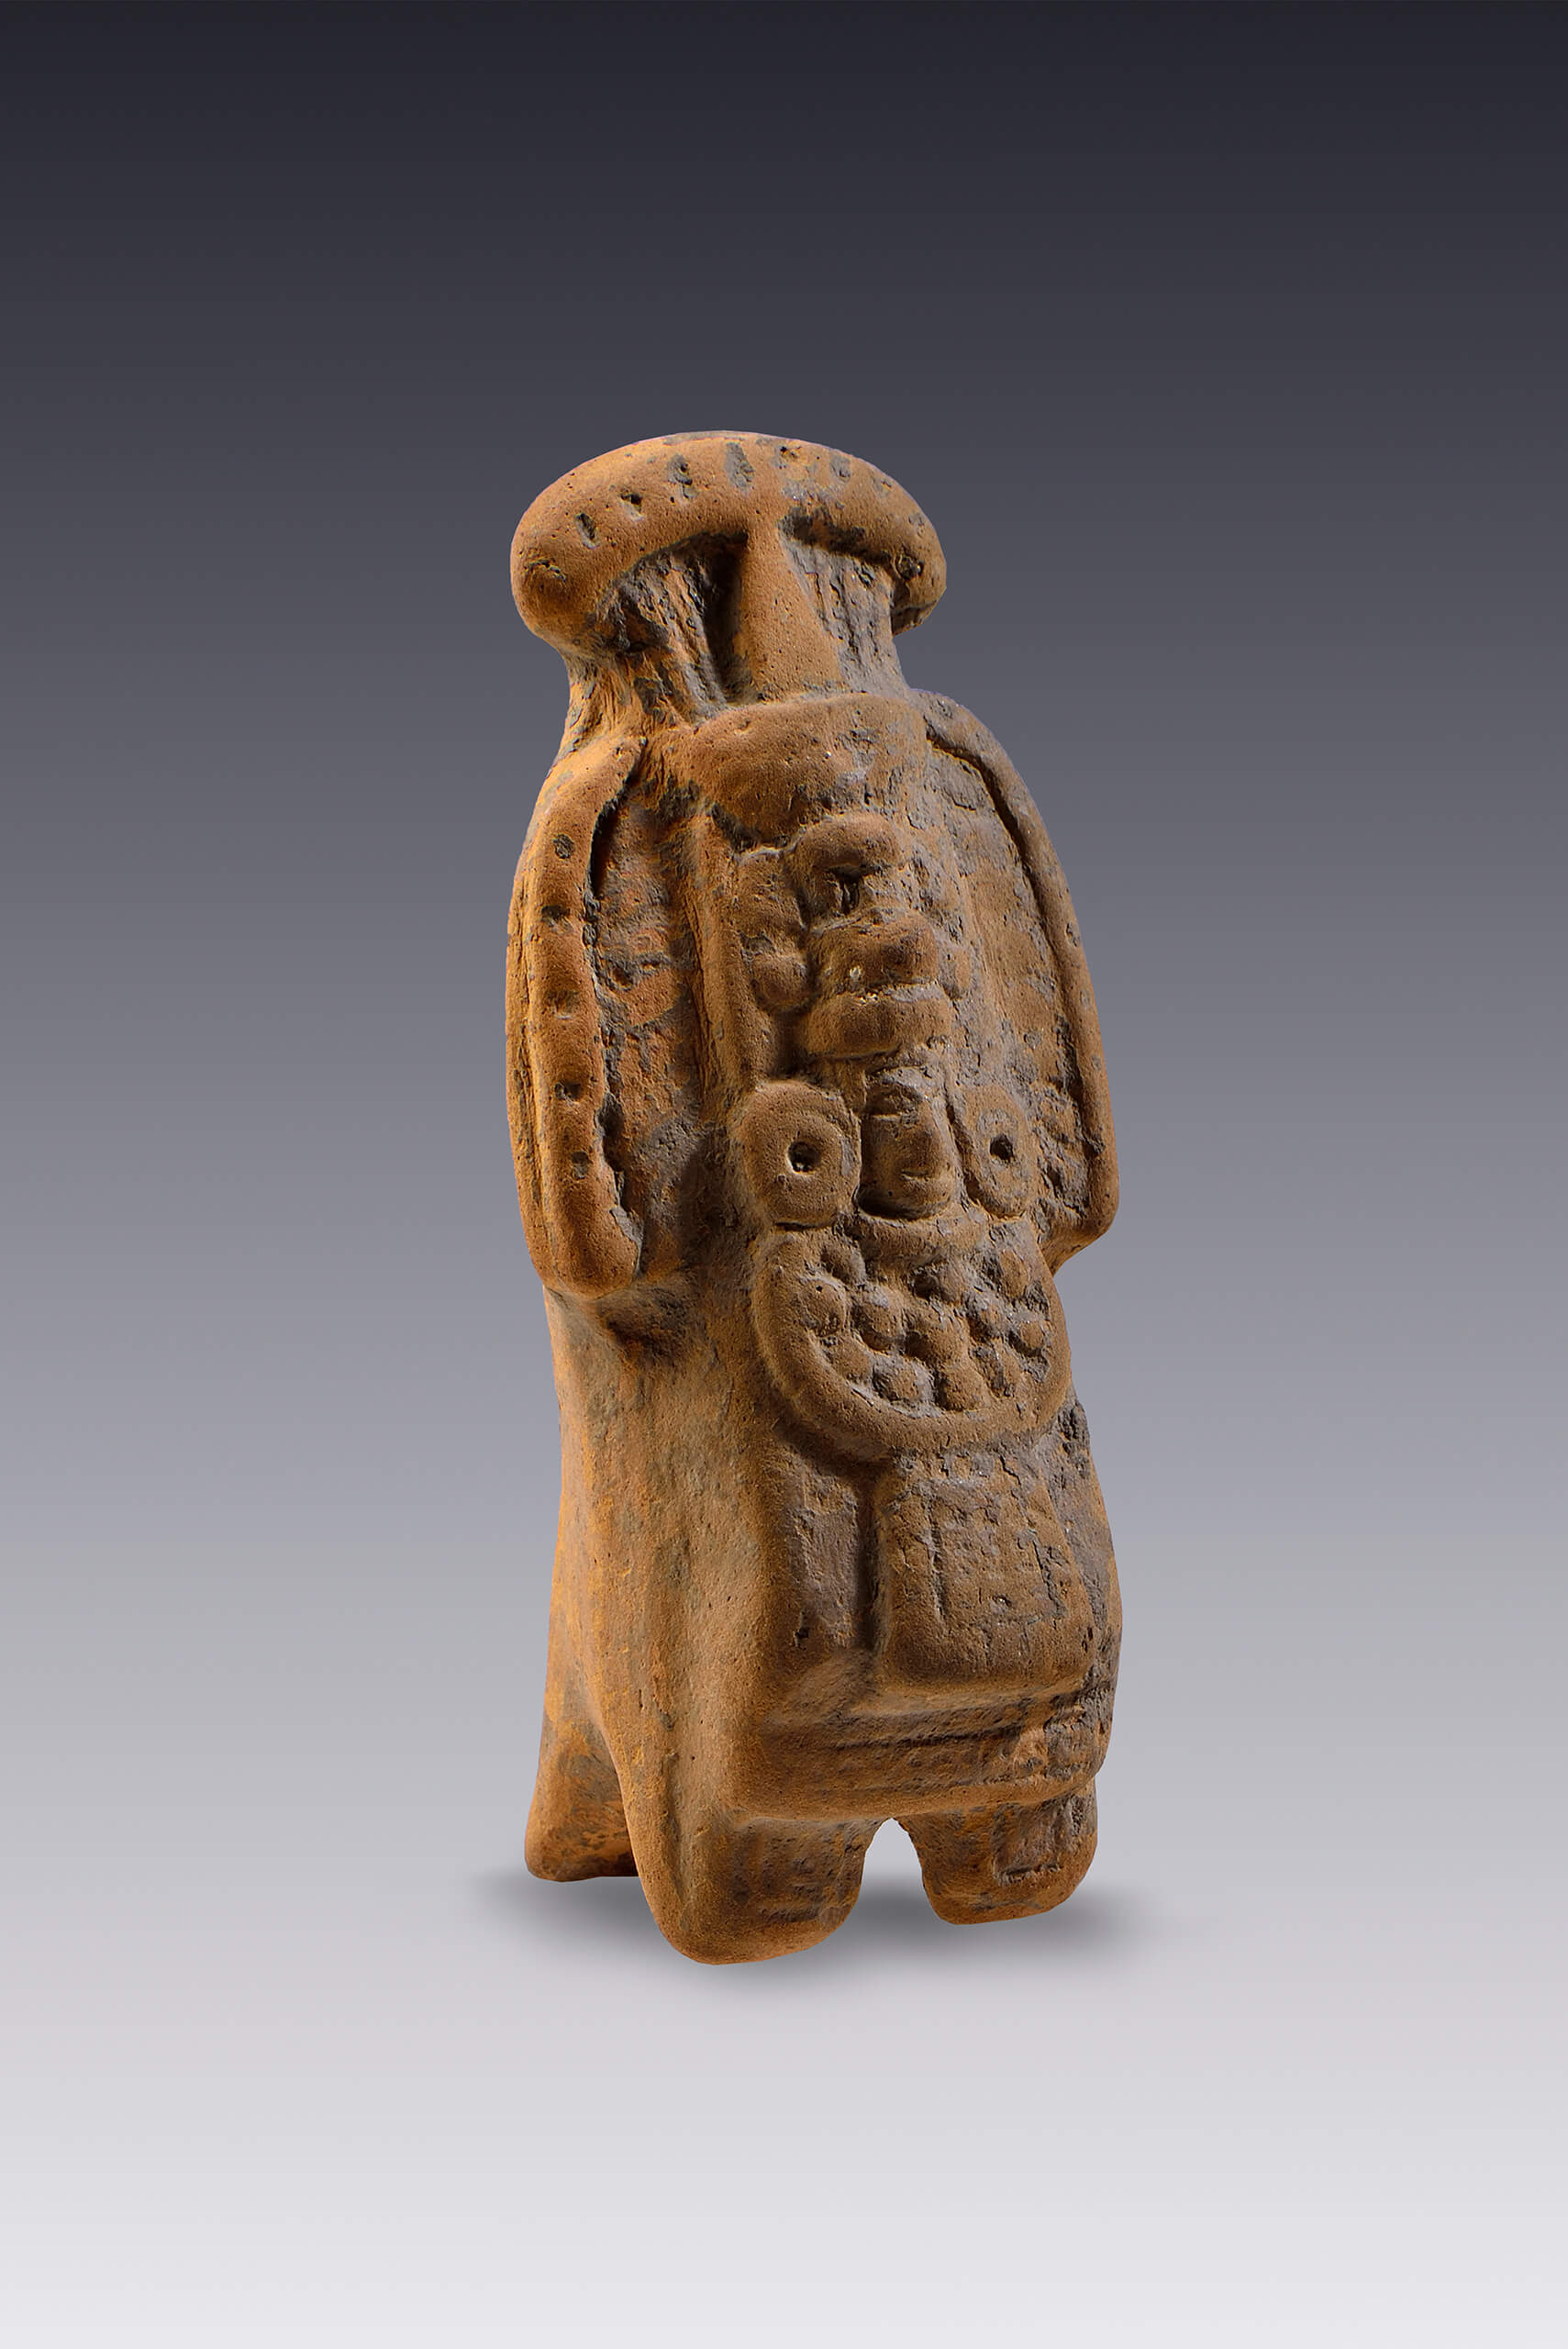 Silbato-efigie de un dignatario maya | El México antiguo. Salas de Arte Prehispánico | Museo Amparo, Puebla